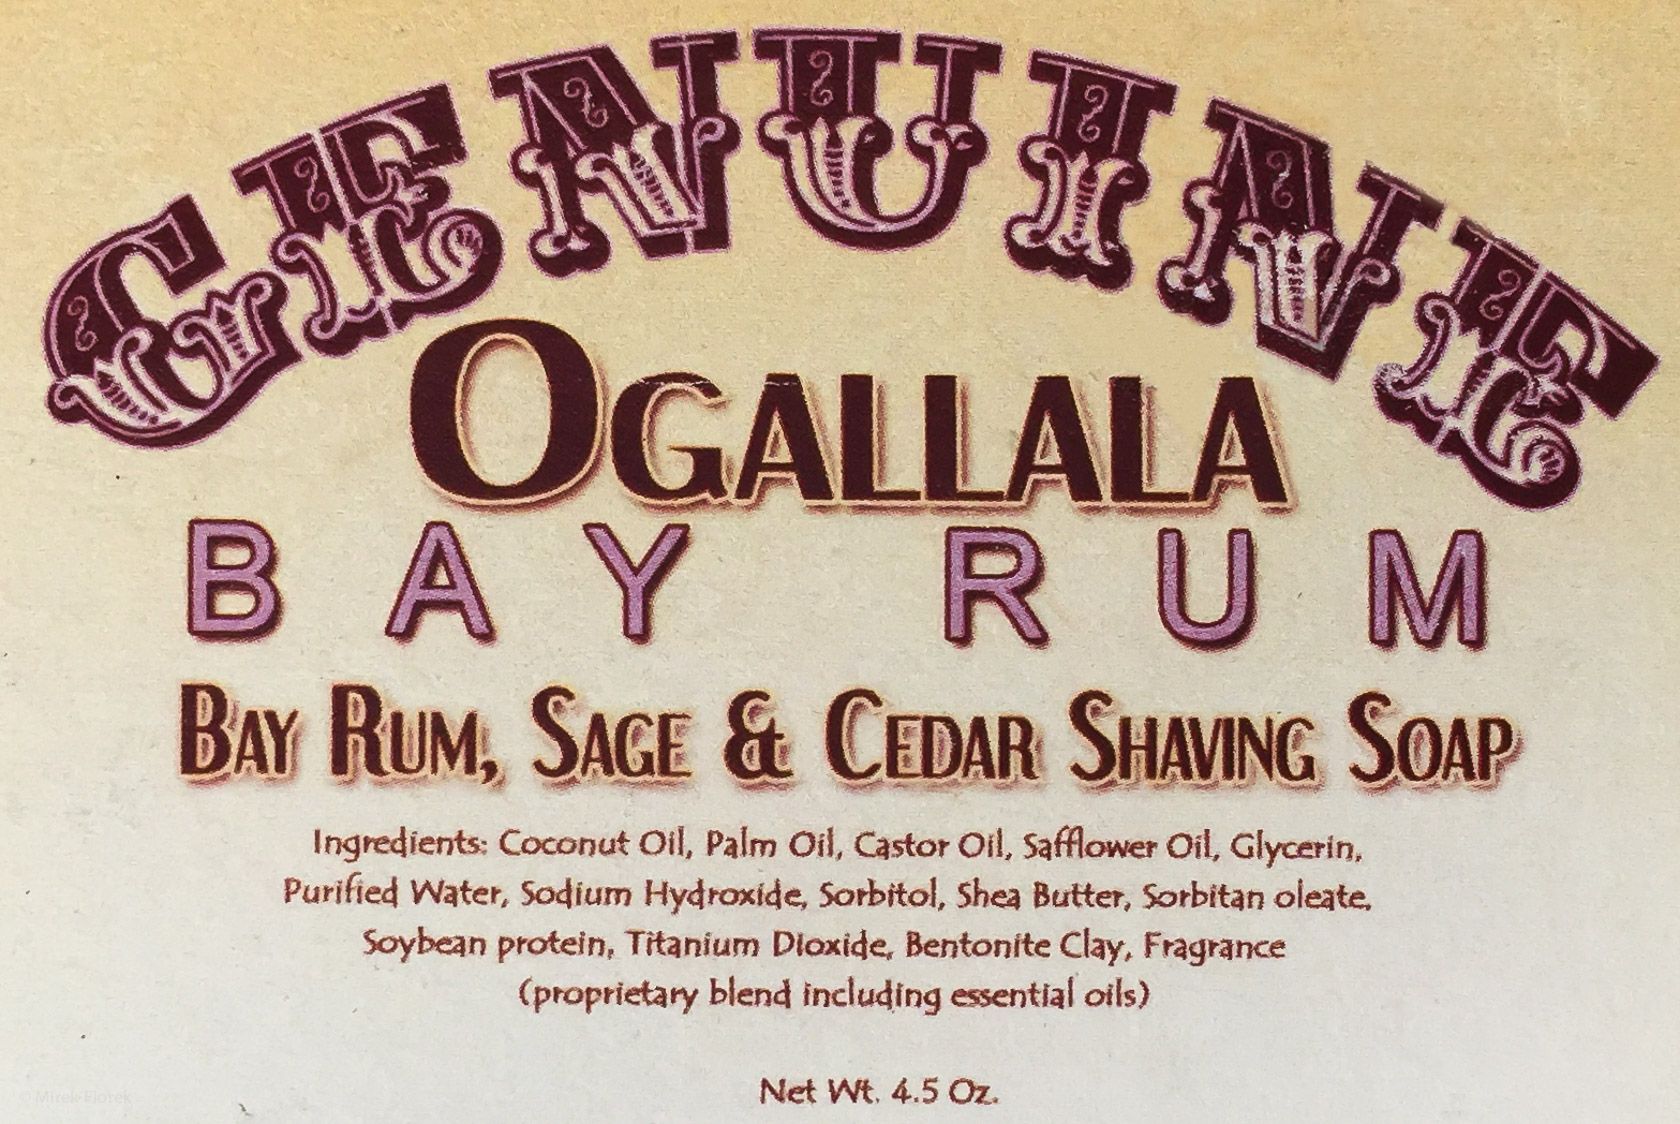 Skład (ingredients) mydła do golenia Ogallala Bay Rum, Sage and Cedar Wood Shaving Soap